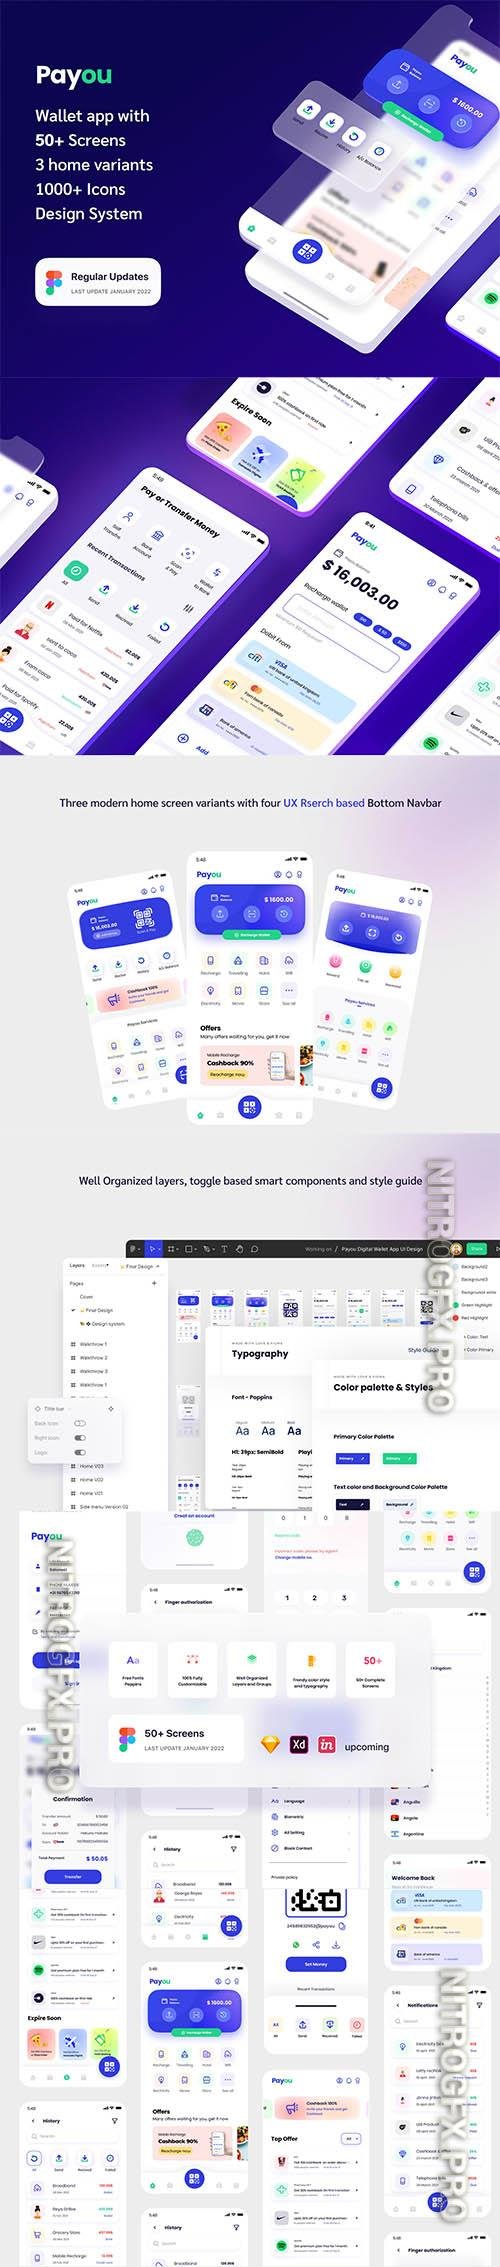 UI8 - Payou digital wallet app UI kit